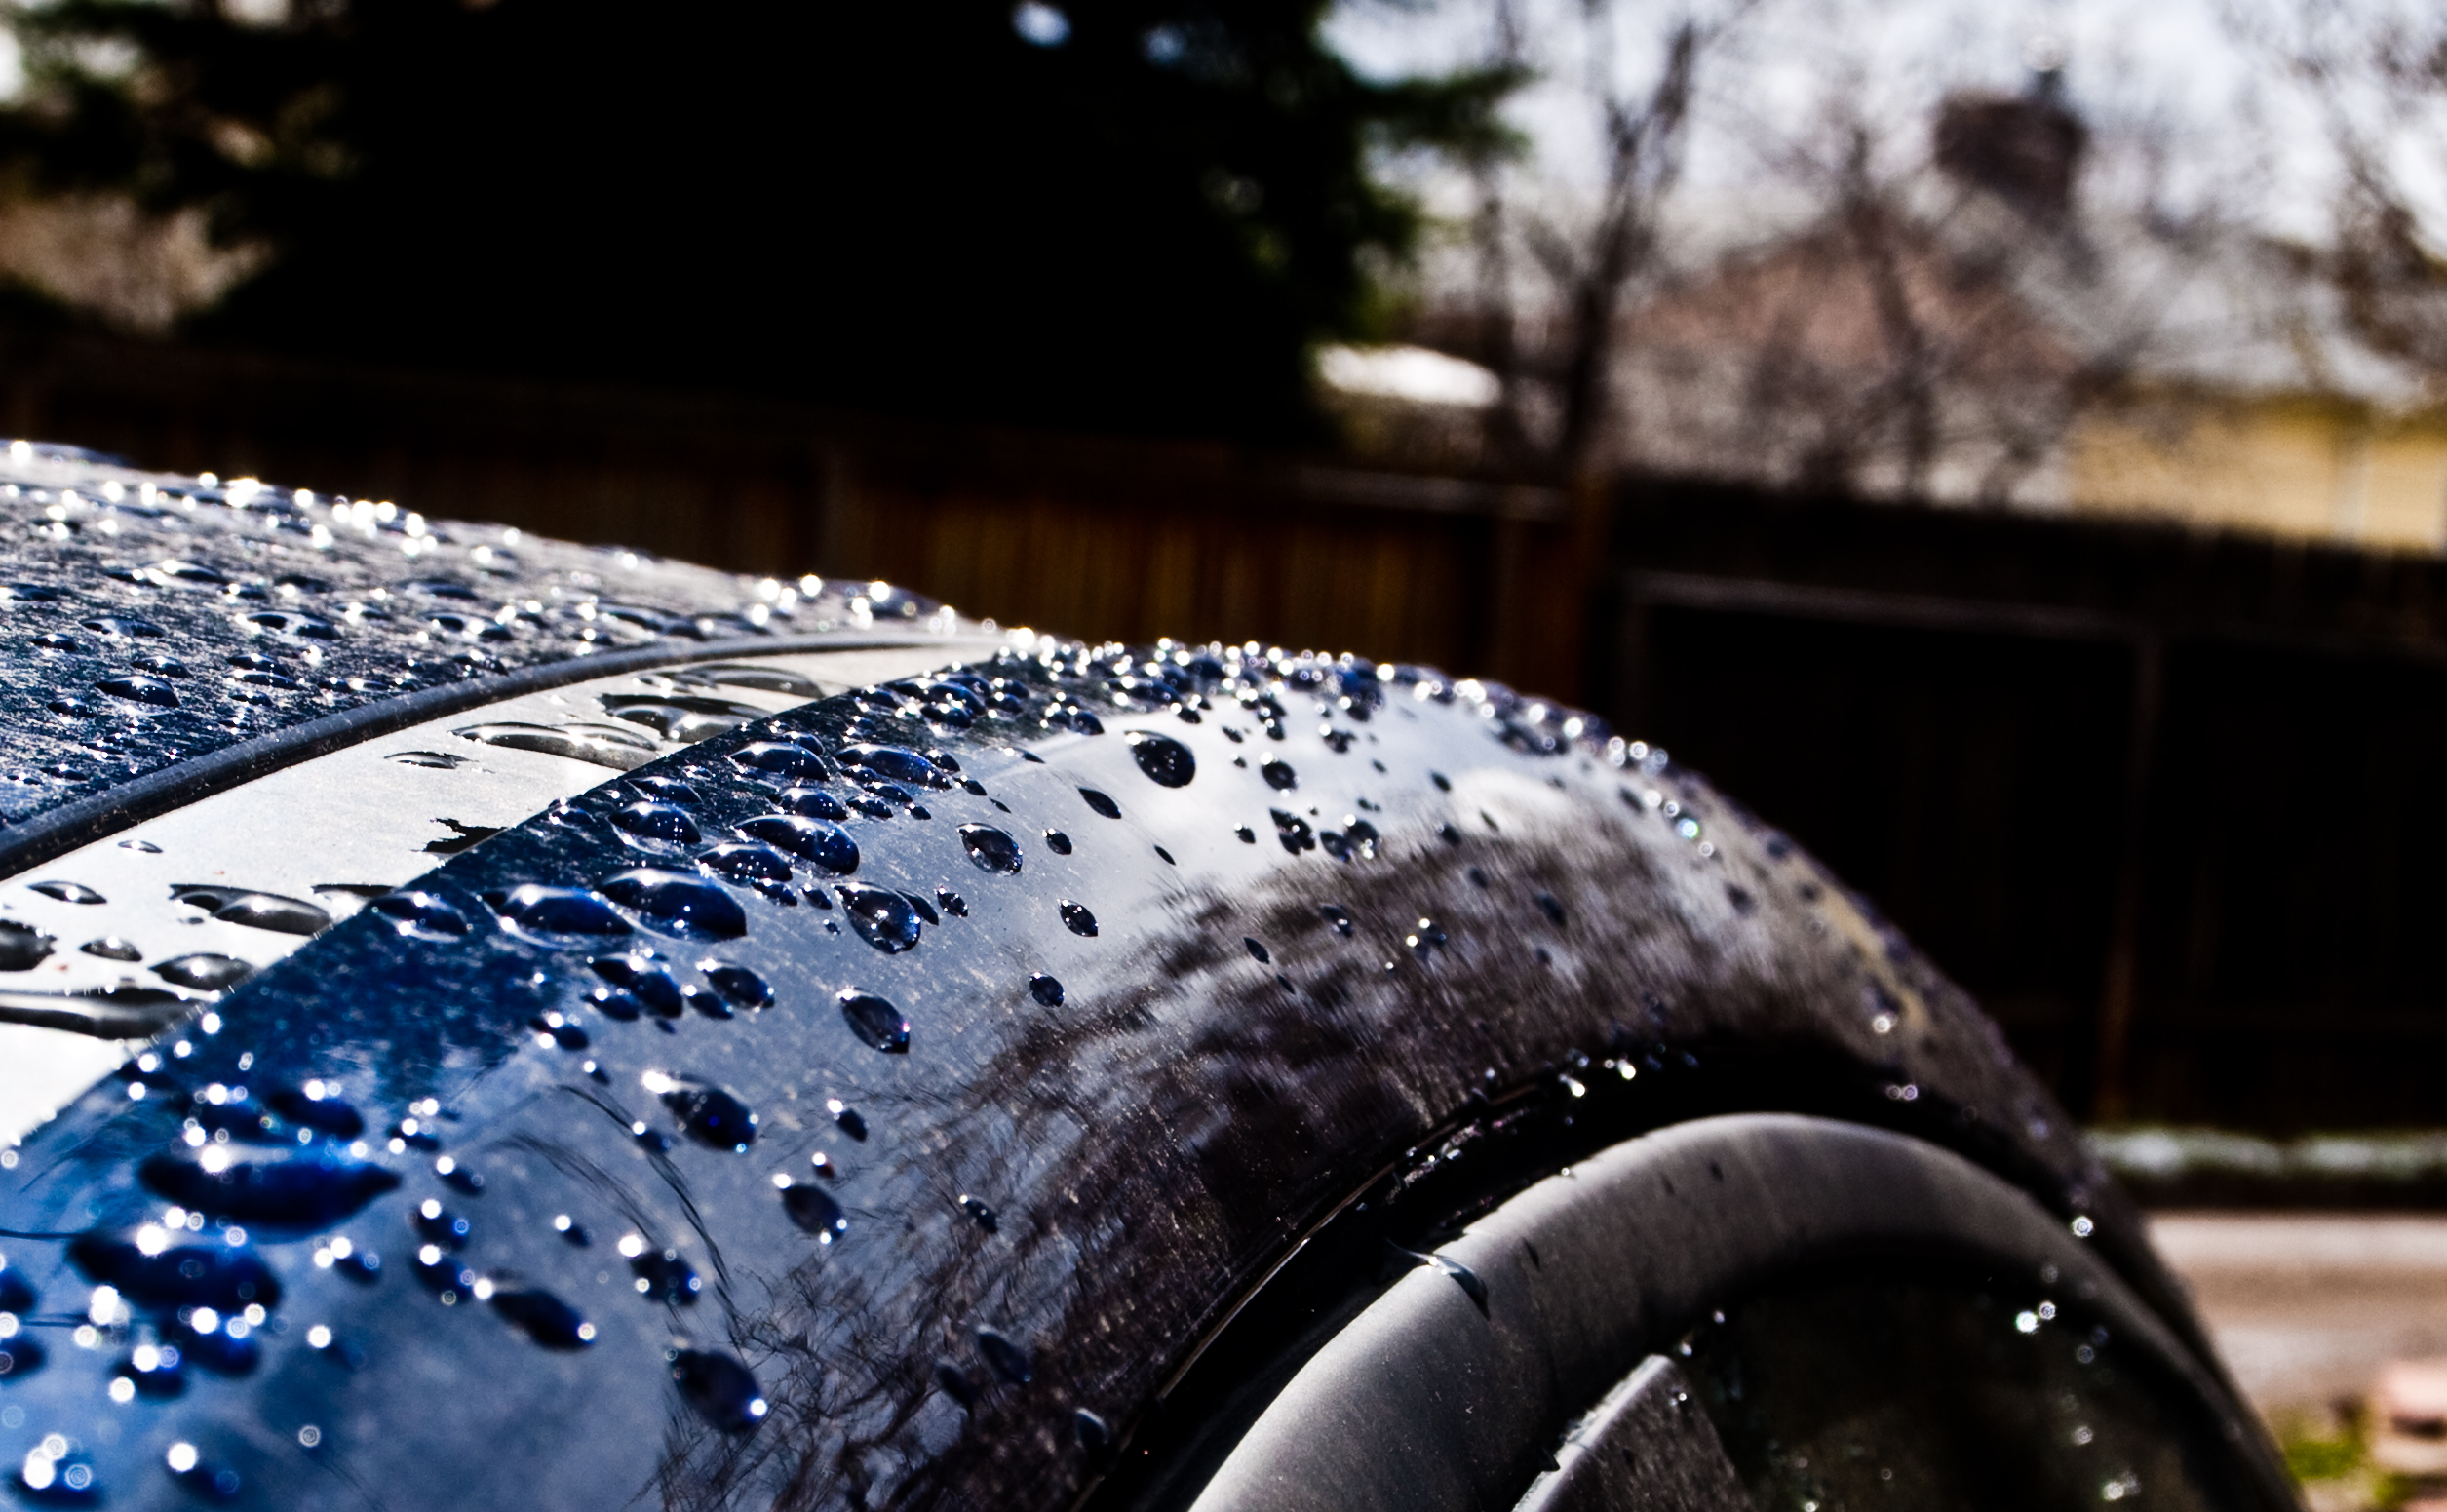 Автомобили после воды. Капли воды на автомобиле. Мокрое авто. Машина в брызгах воды. Мокрая машина.